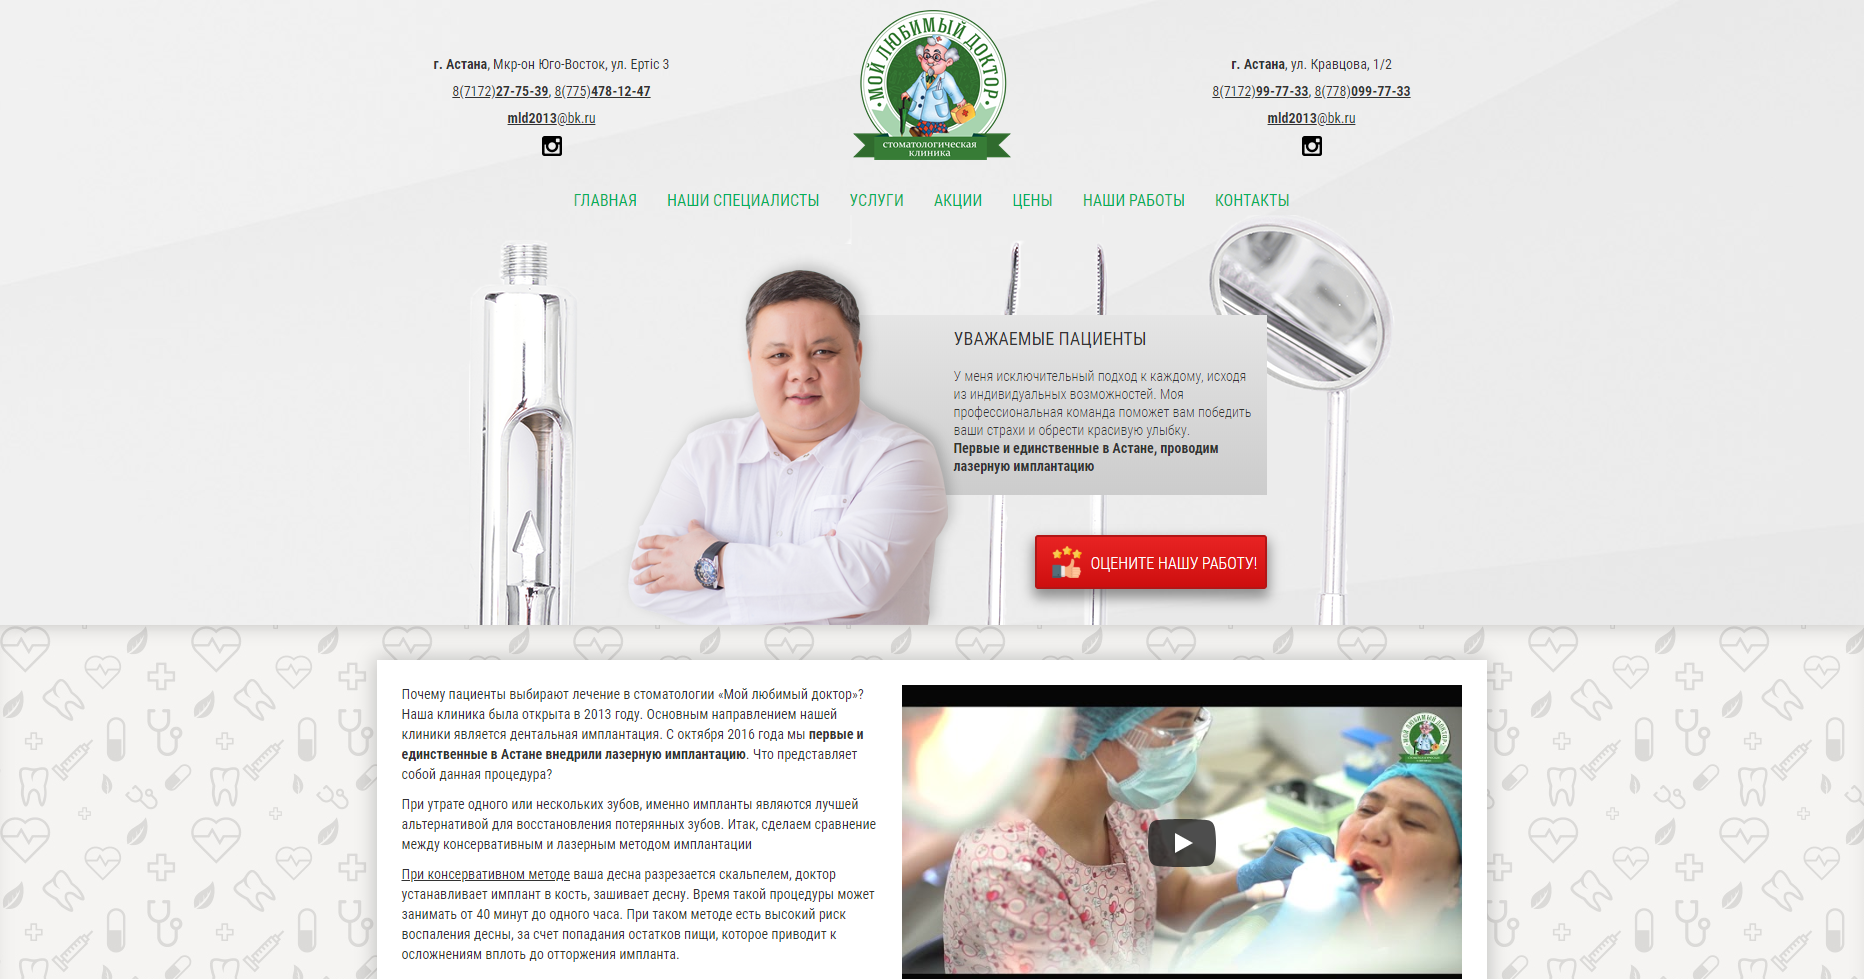 Редизайн сайта стоматологической клиники Мой Любимый Доктор, г. Астана - http://turgynbayev.kz/